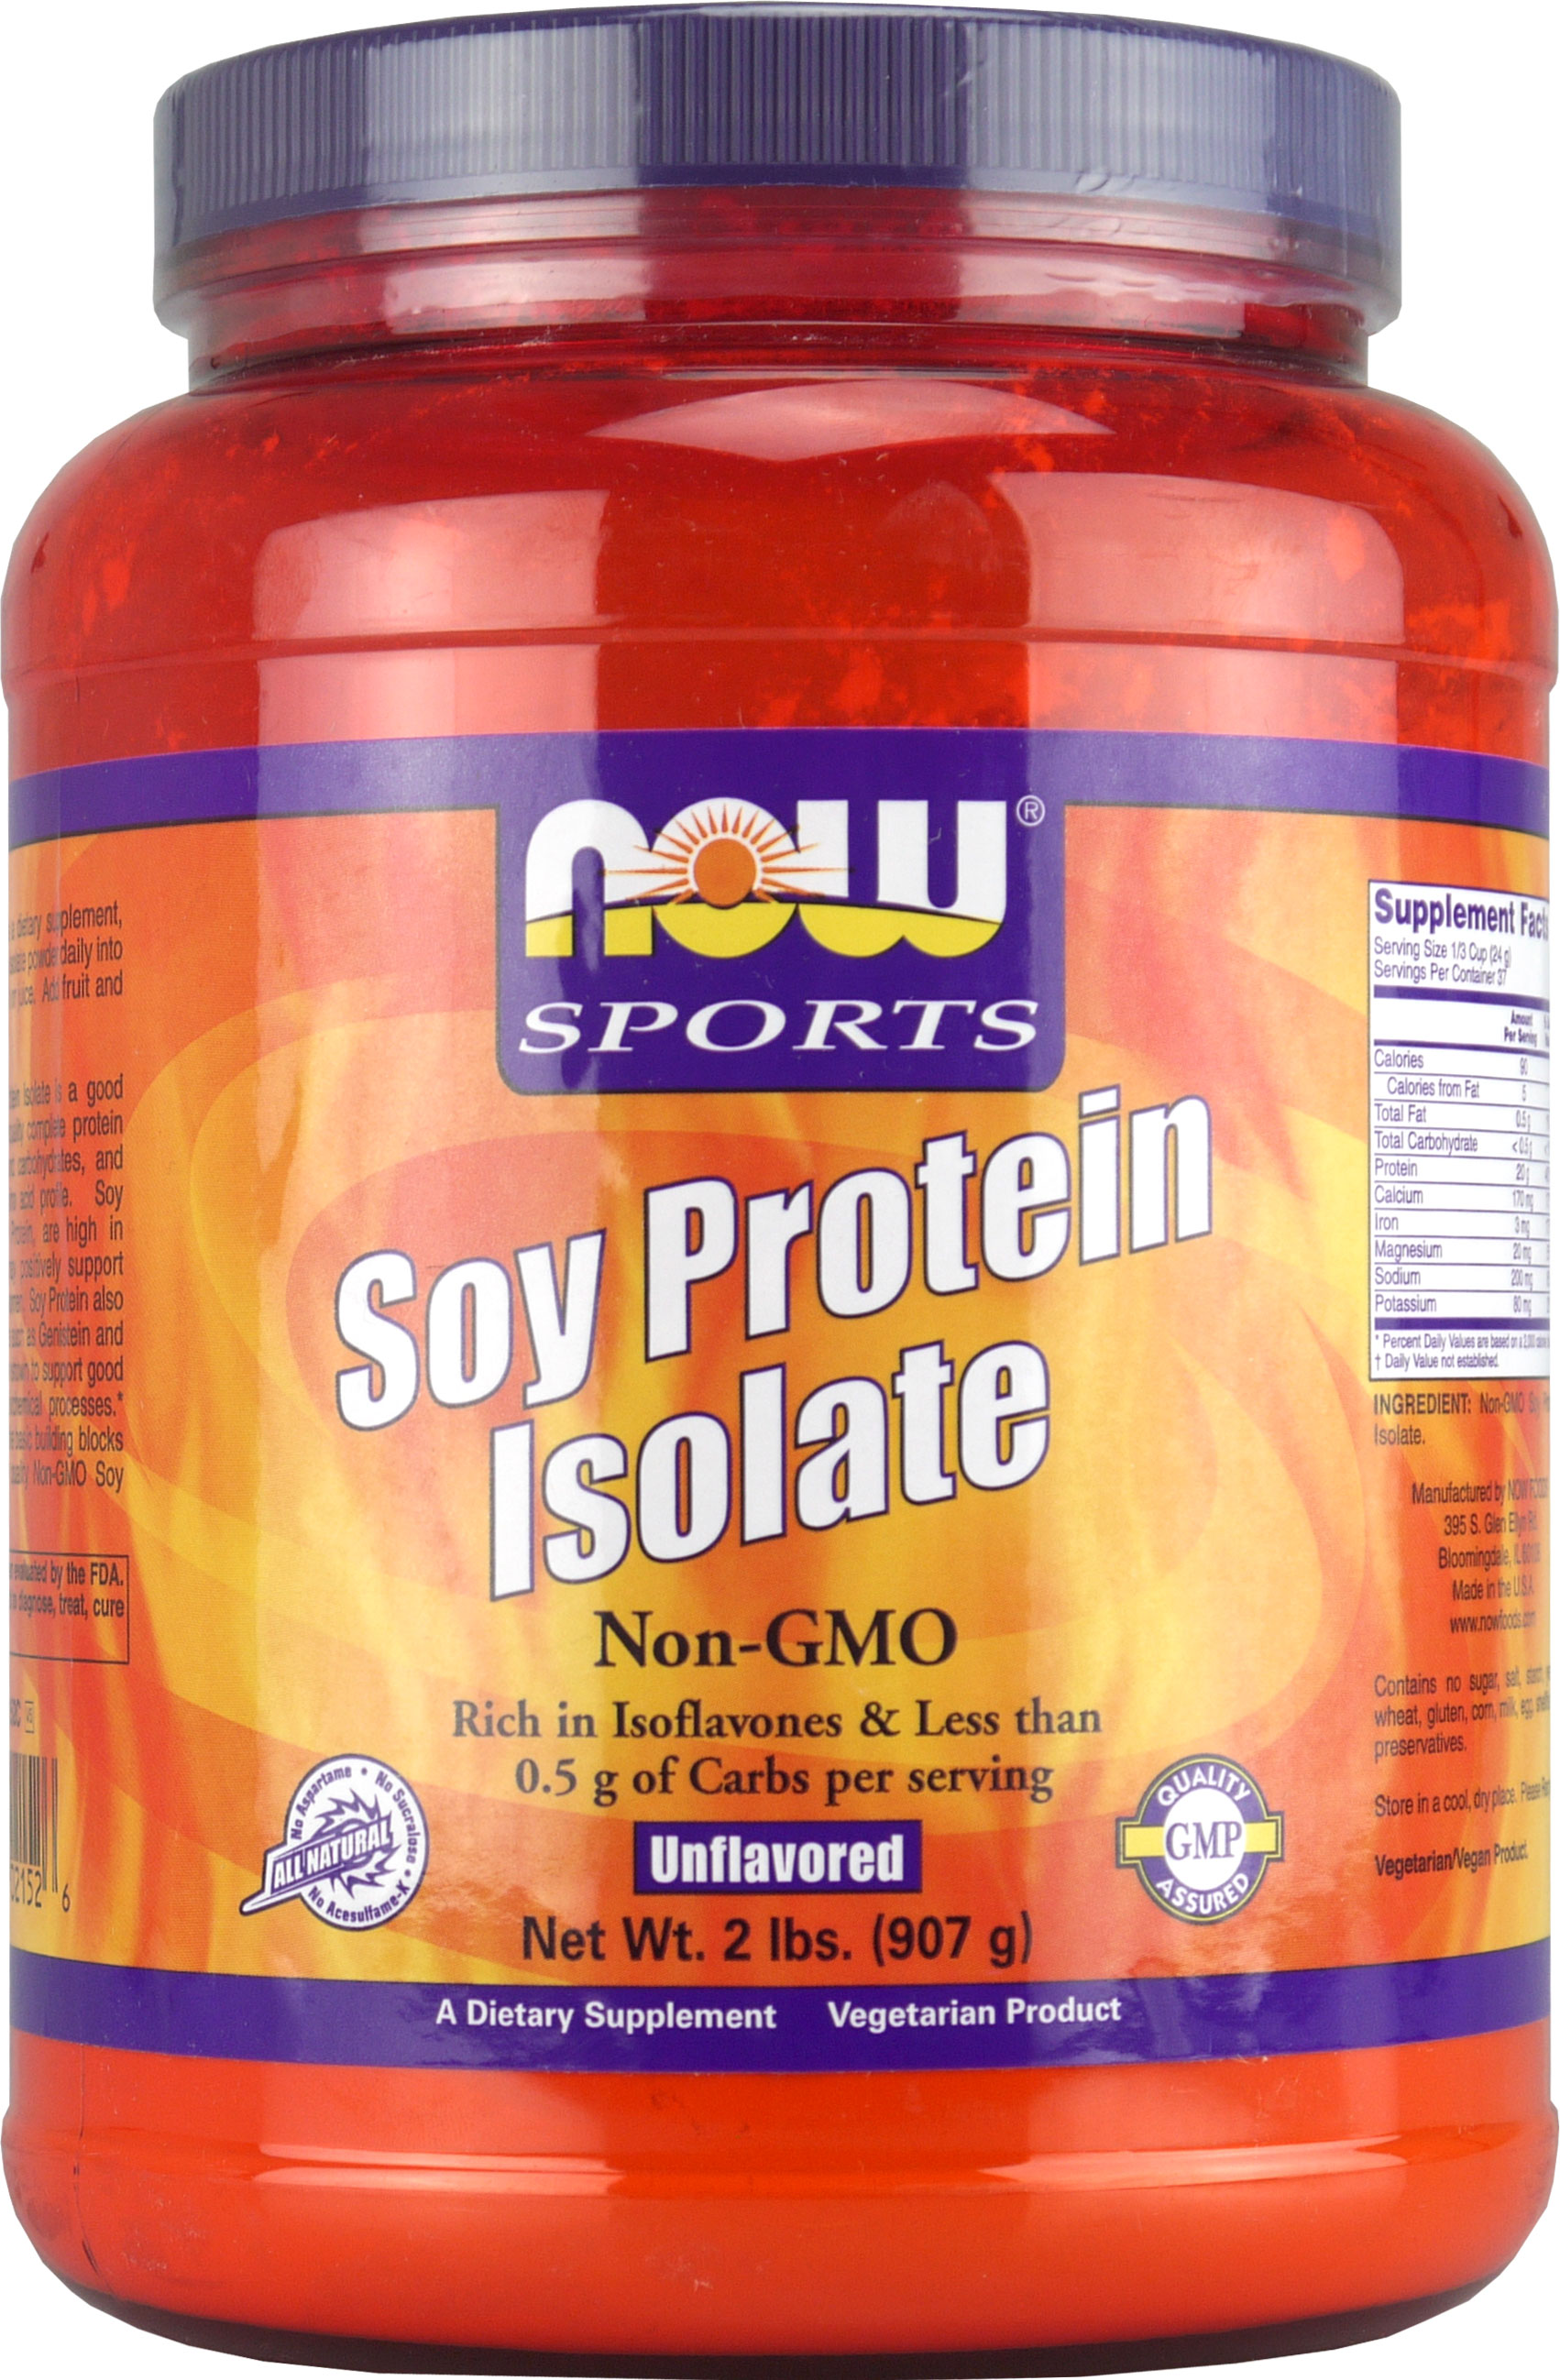 Протеин соевого белка. Soy Protein isolate. Соевый протеин. Now soy Protein isolate. Соевый изолят протеин soy.